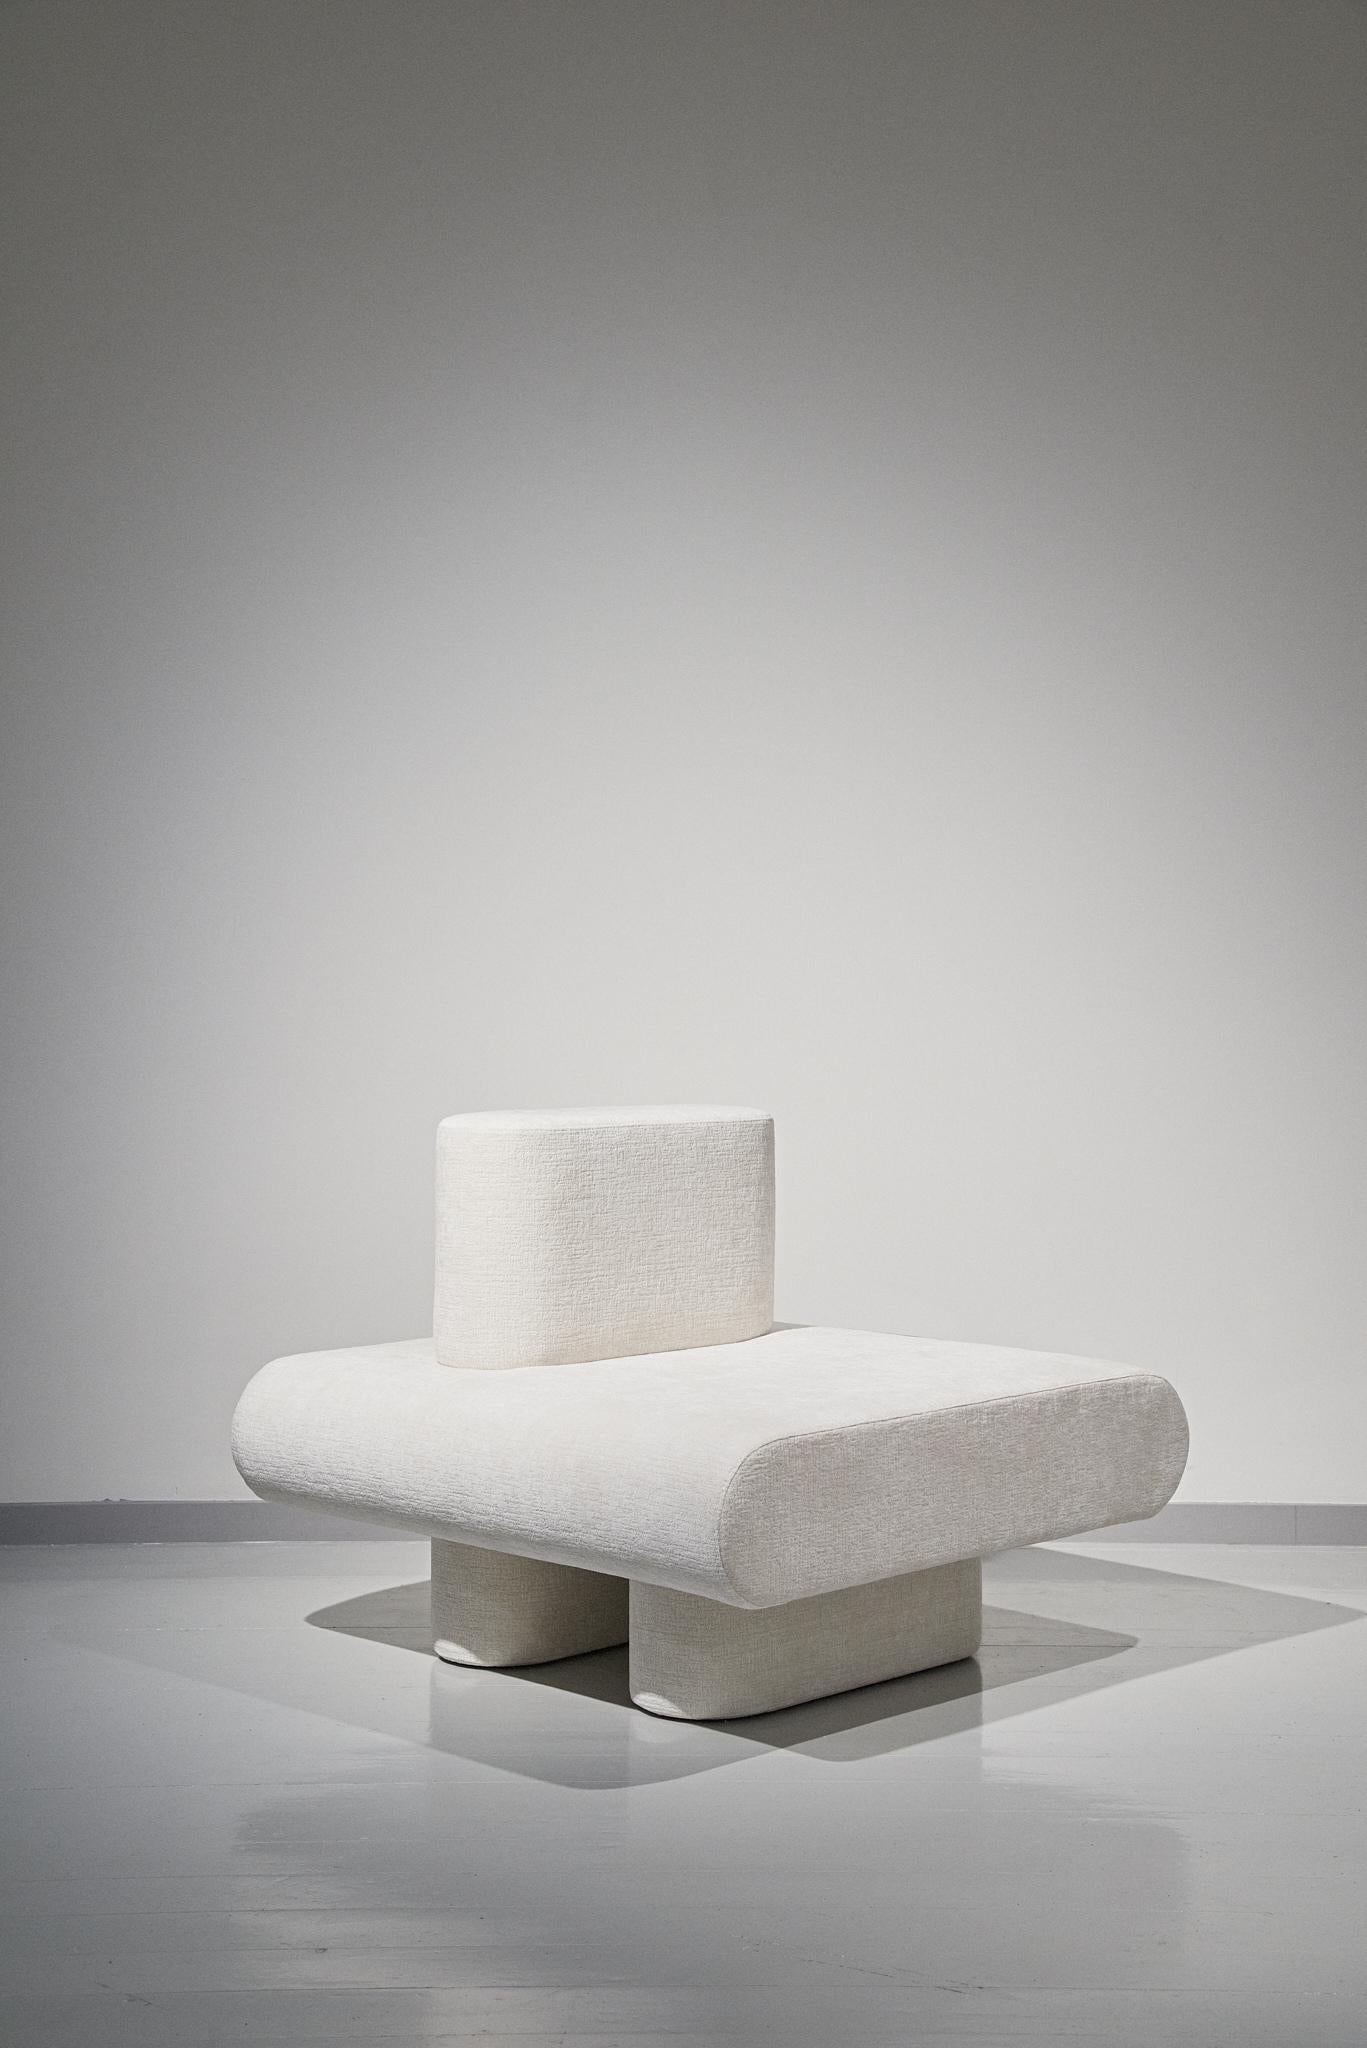 Die neue modulare Kollektion Flowers von Olga Engels besteht aus einem Sofa und modularen Stühlen. Charis können untereinander auf vielfältige Weise verbunden werden. Flowers ist eine Anspielung auf einfache weiße Feldblumen, die man sammeln und